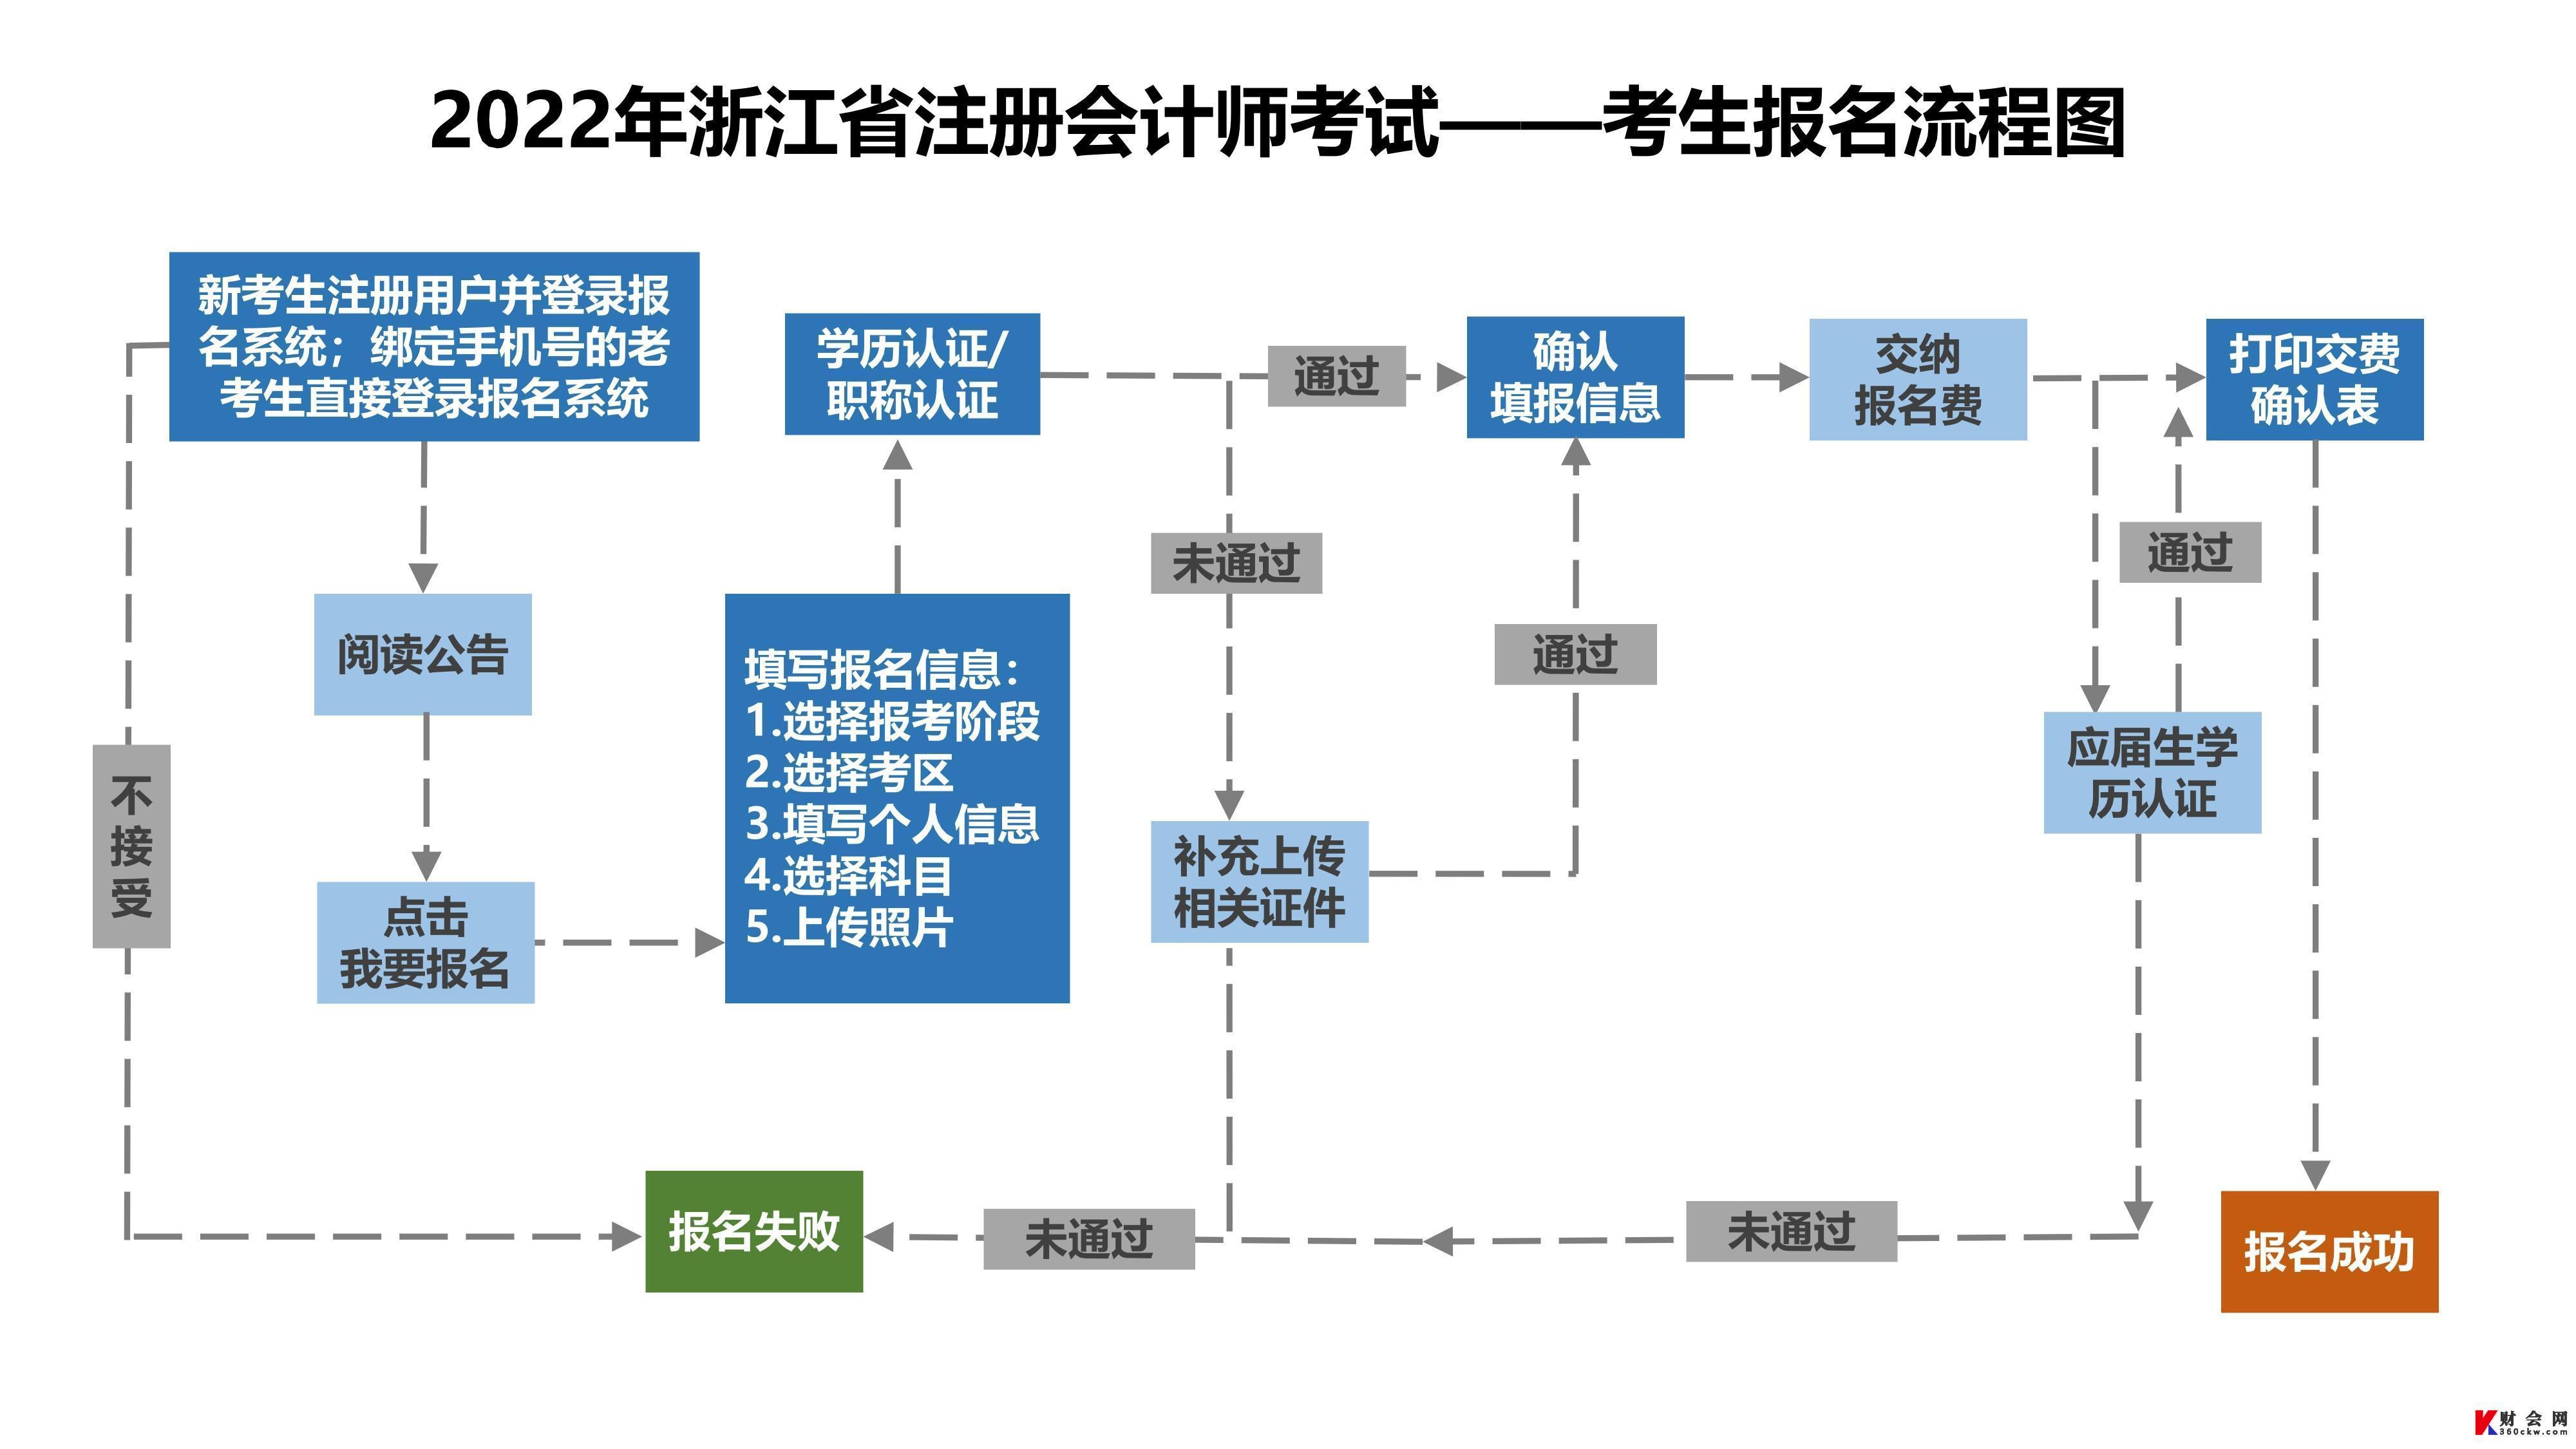 2022年浙江注册会计师考试考生报名流程图